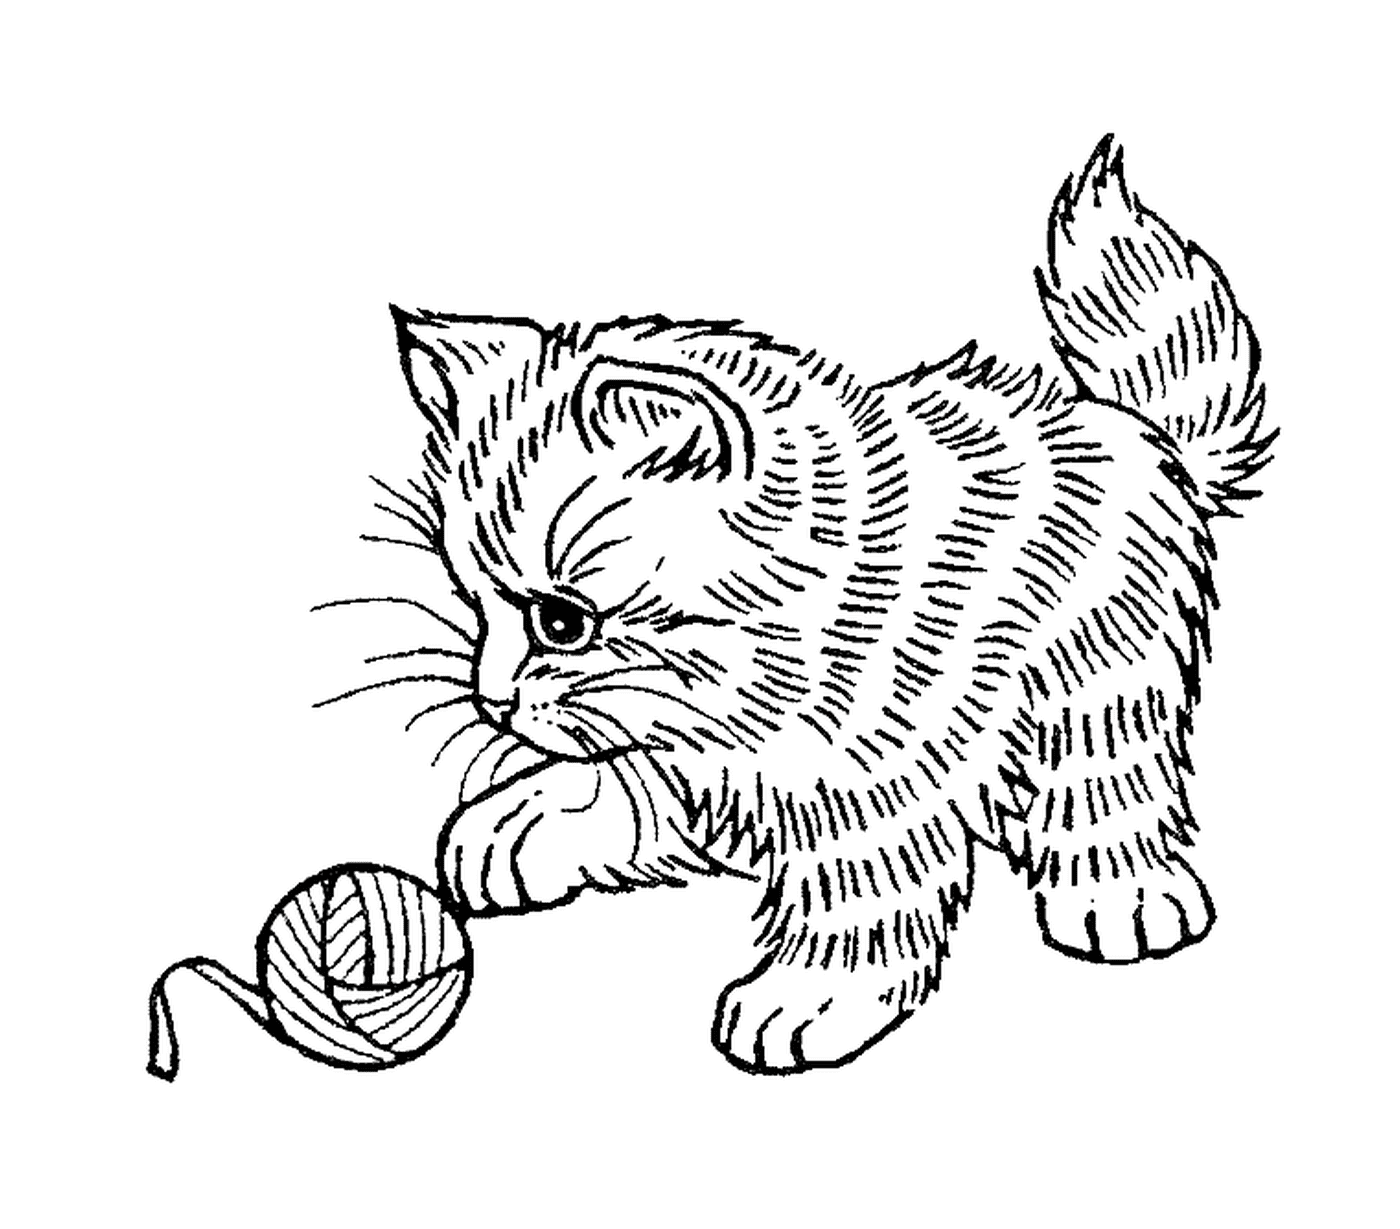  Прекрасный кошка играет с шариком для шерсти 